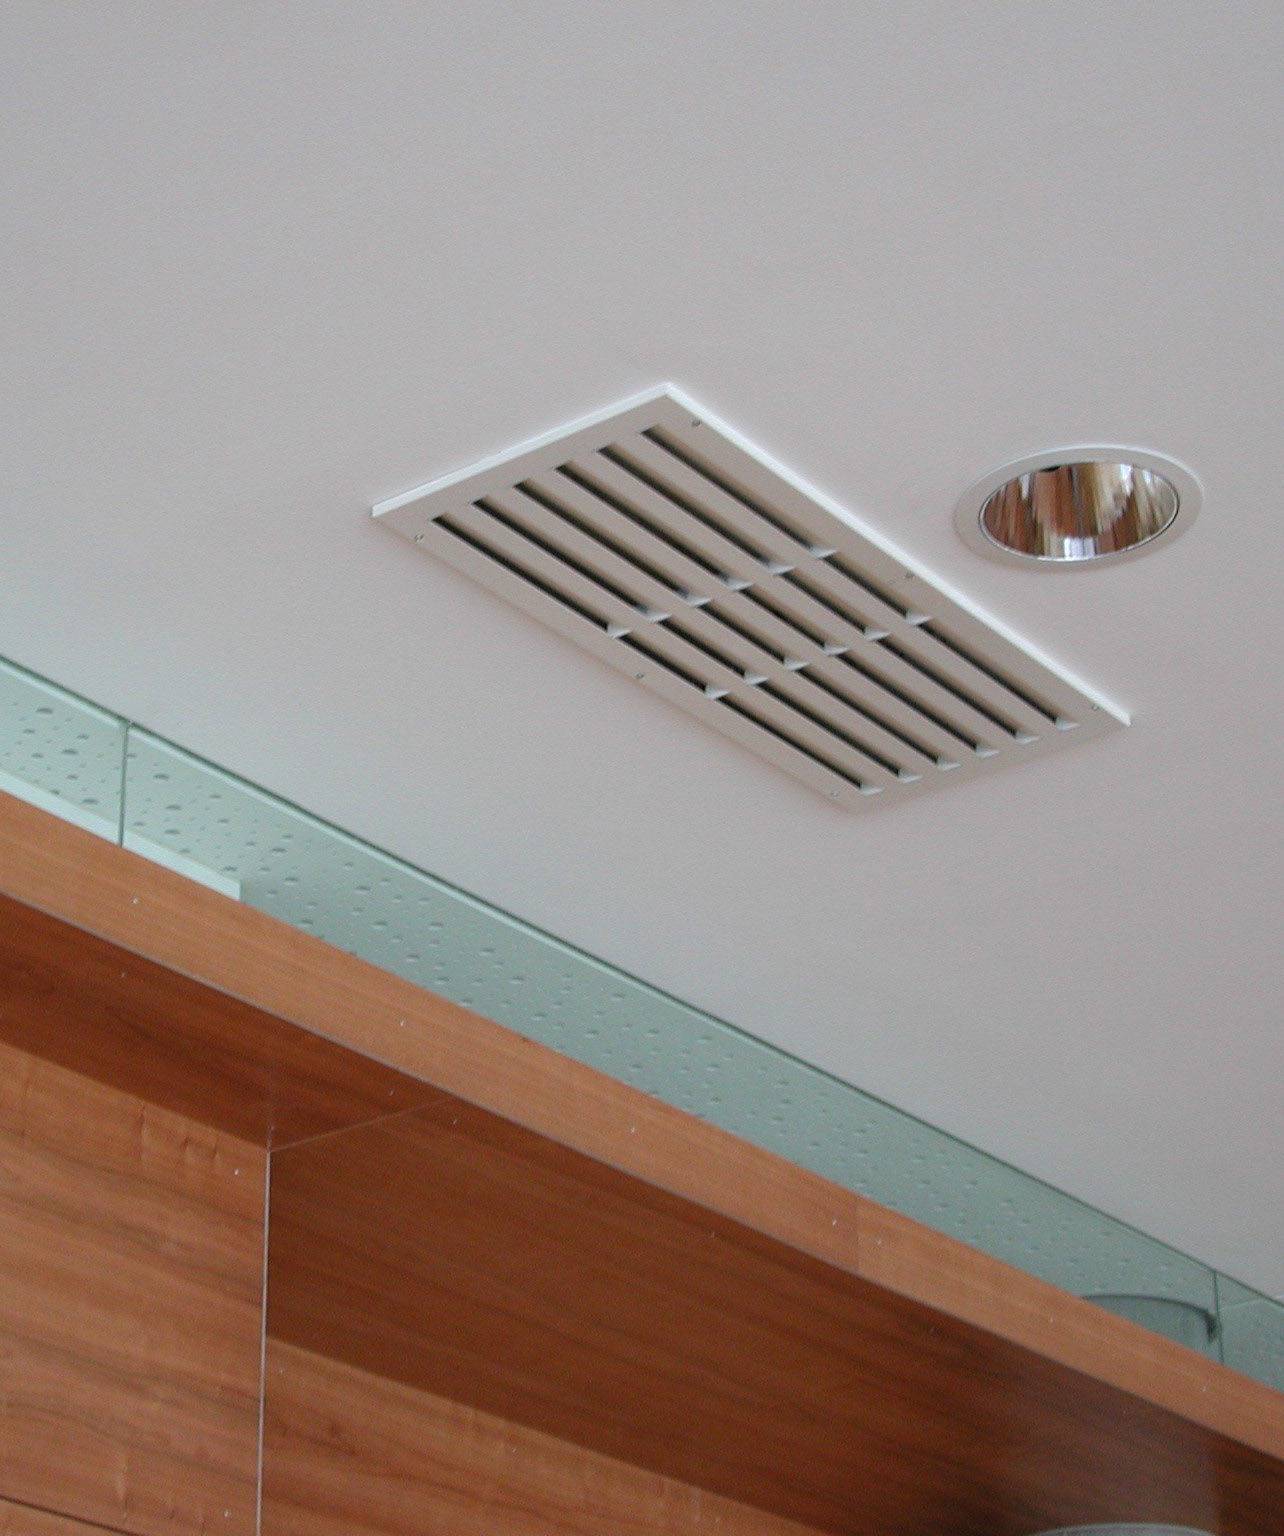 Вентиляционные решетки для натяжных (подвесных) потолков: установка, зачем нужна, преимущества и недостатки